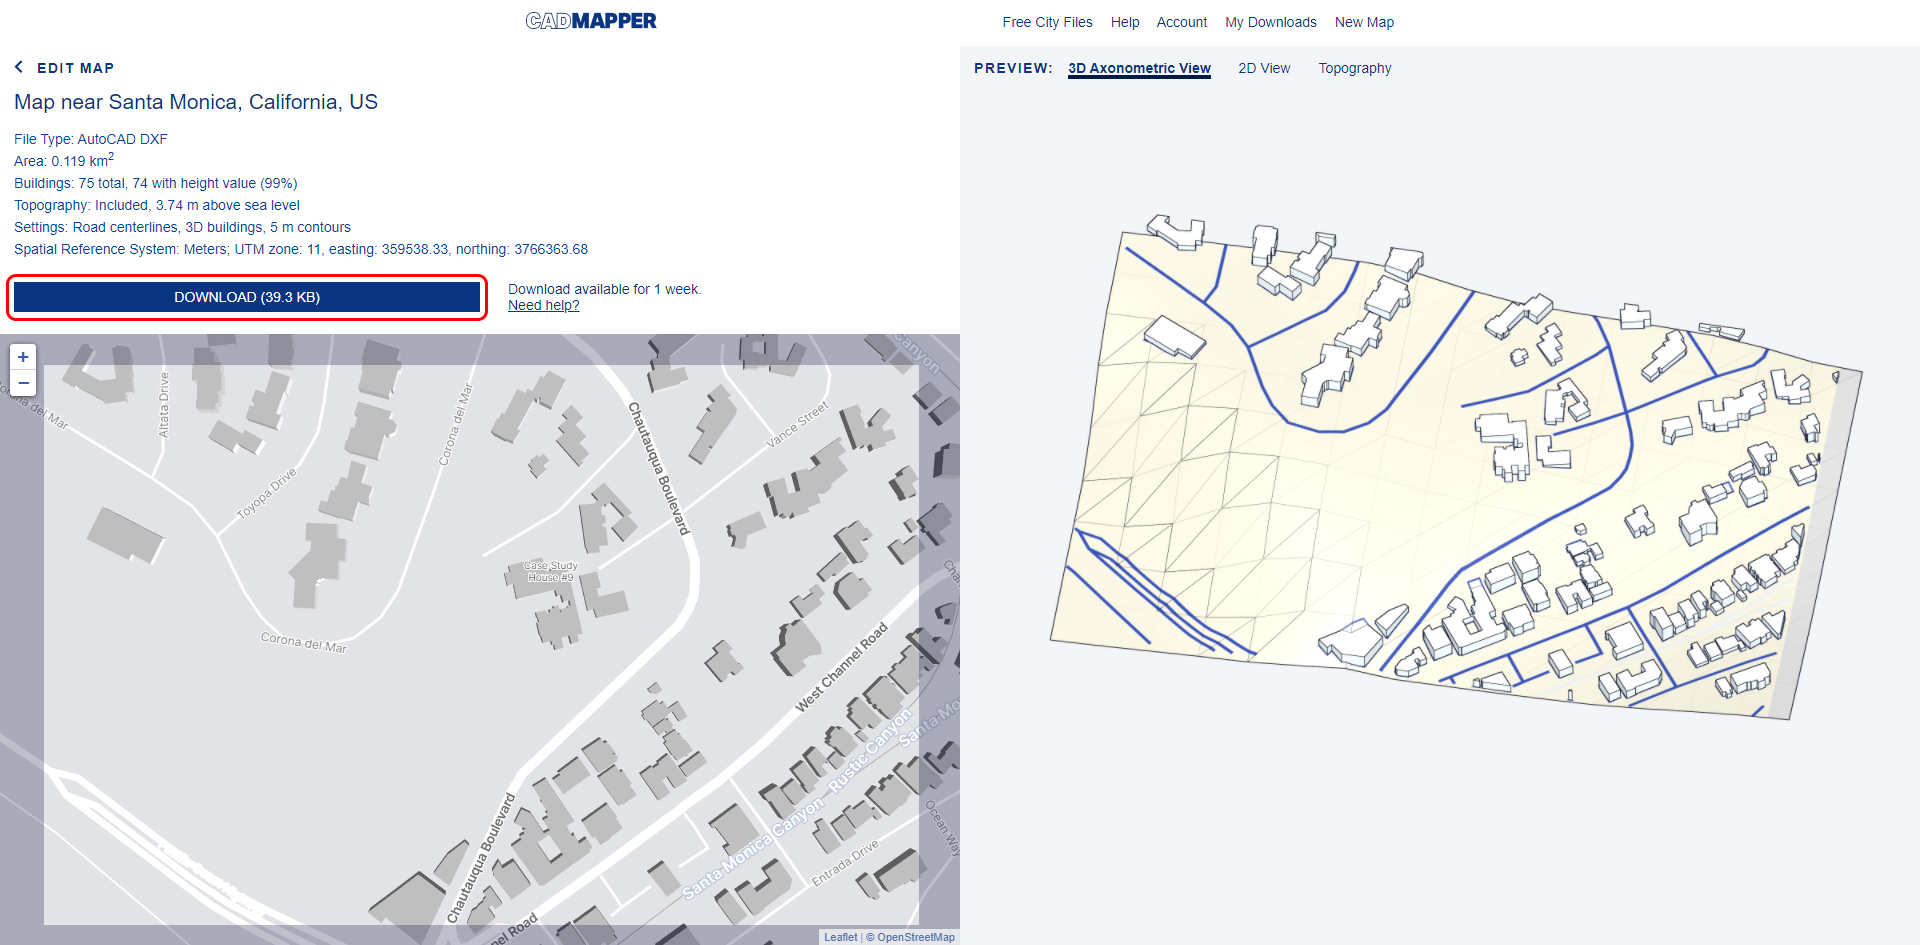 Esta imagen muestra el sitio web del mapeador CAD para el proyecto de la casa Eames.